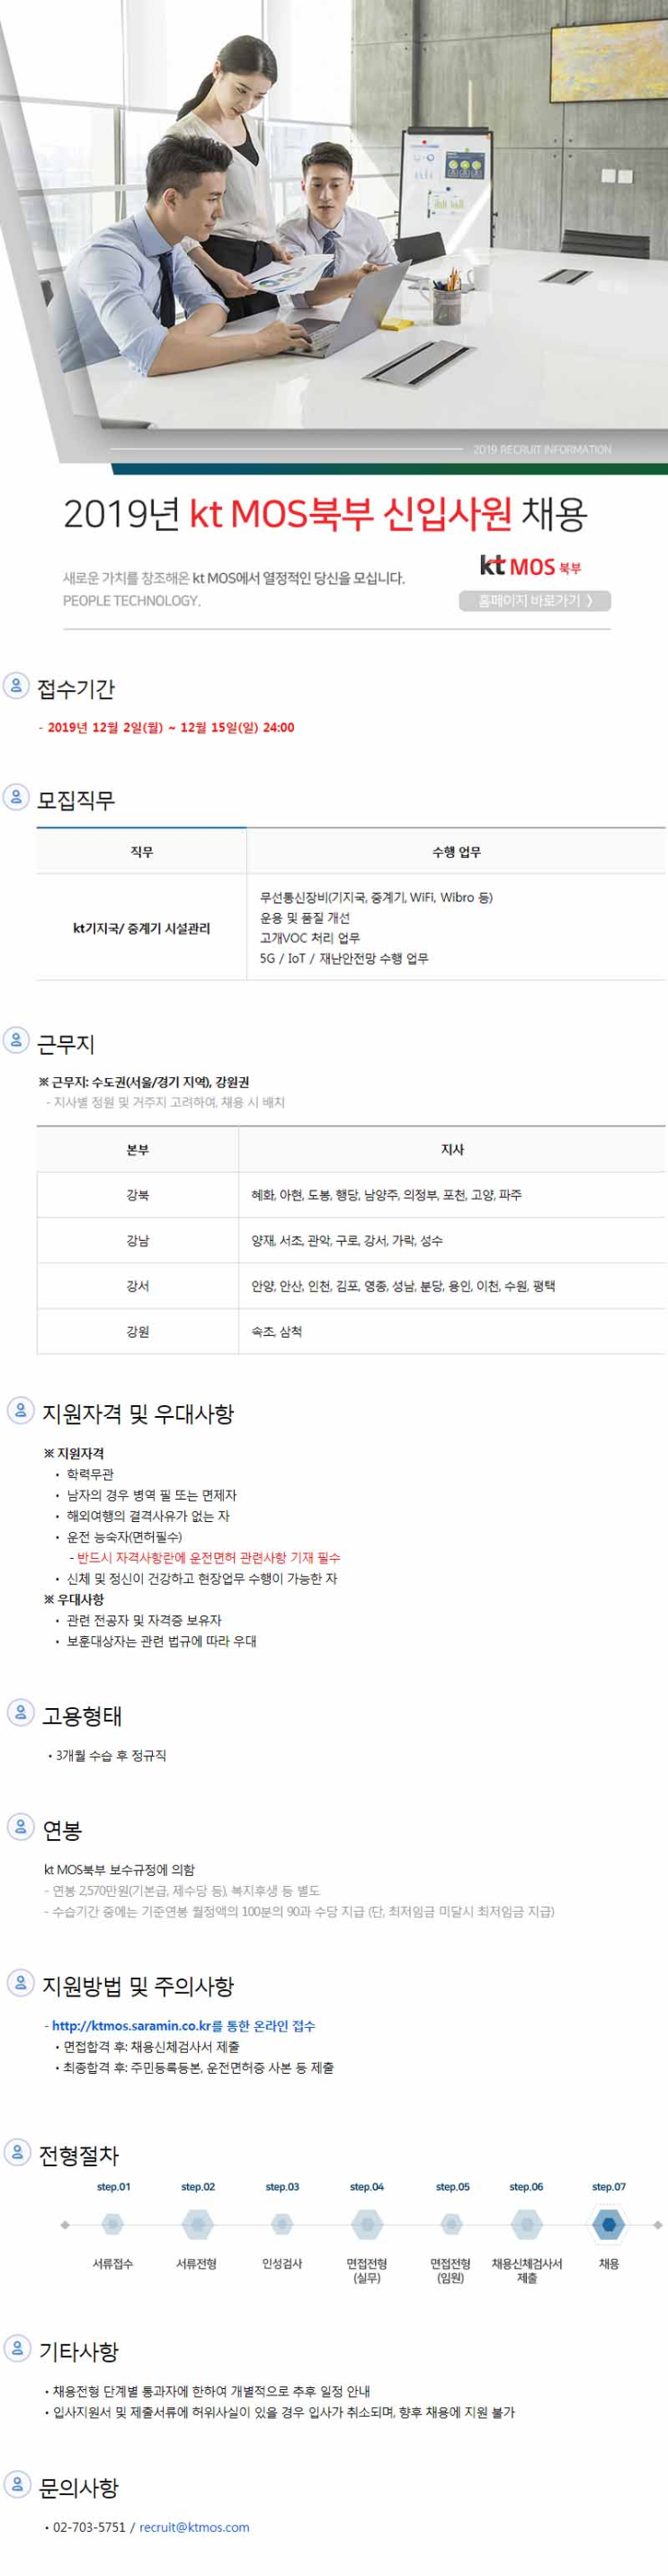 [채용][KT] 2019 kt MOS북부 신입사원 채용 모집